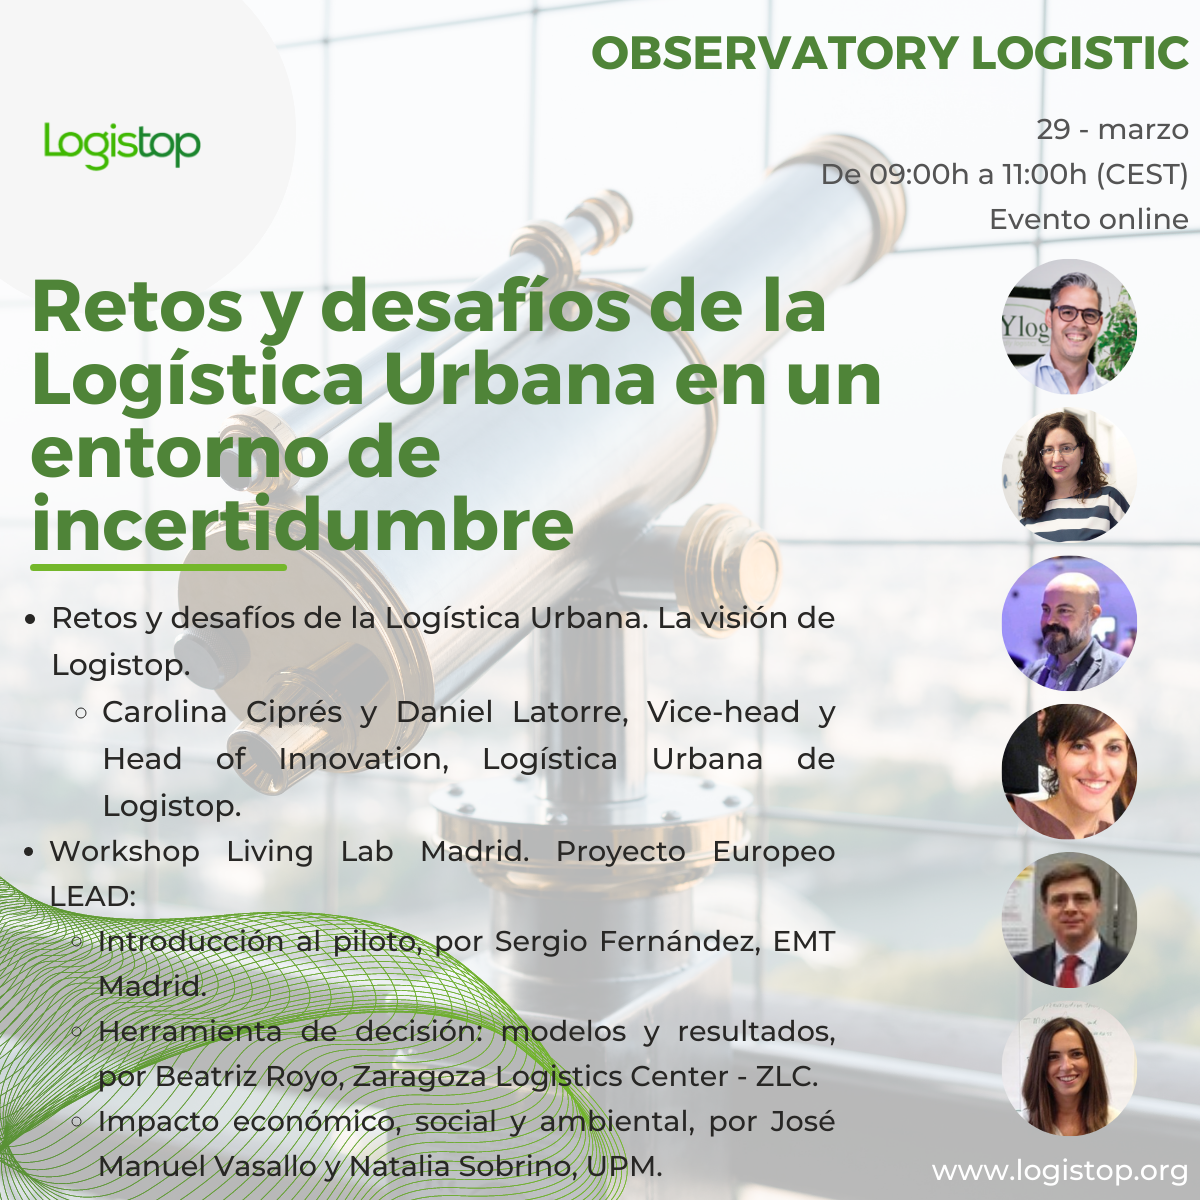 Retos y desafíos de la Observatory Logistic Logística Urbana en un entorno de incertidumbre